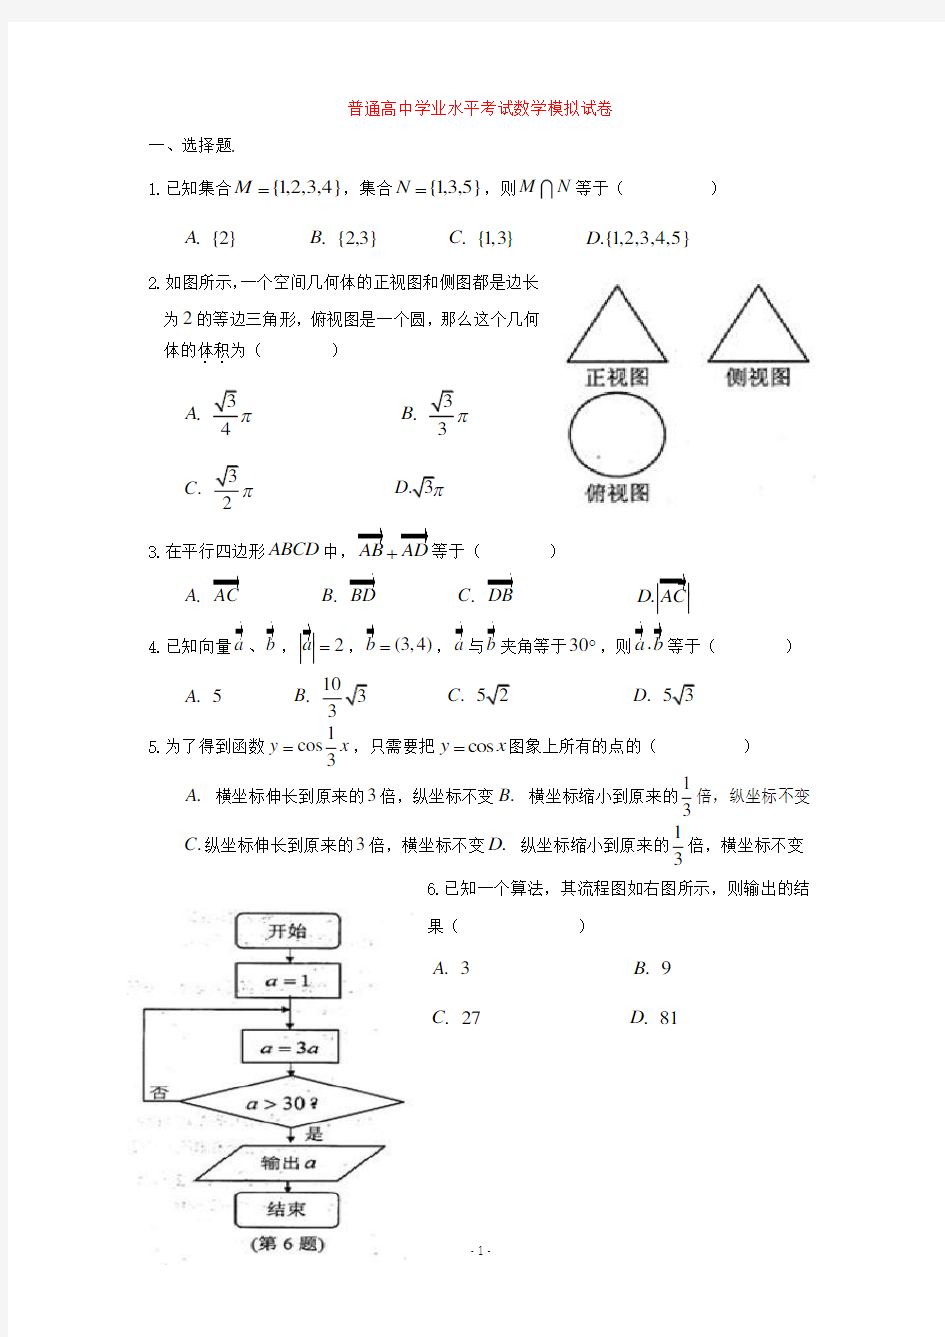 普通高中数学学业水平考试试卷.pdf